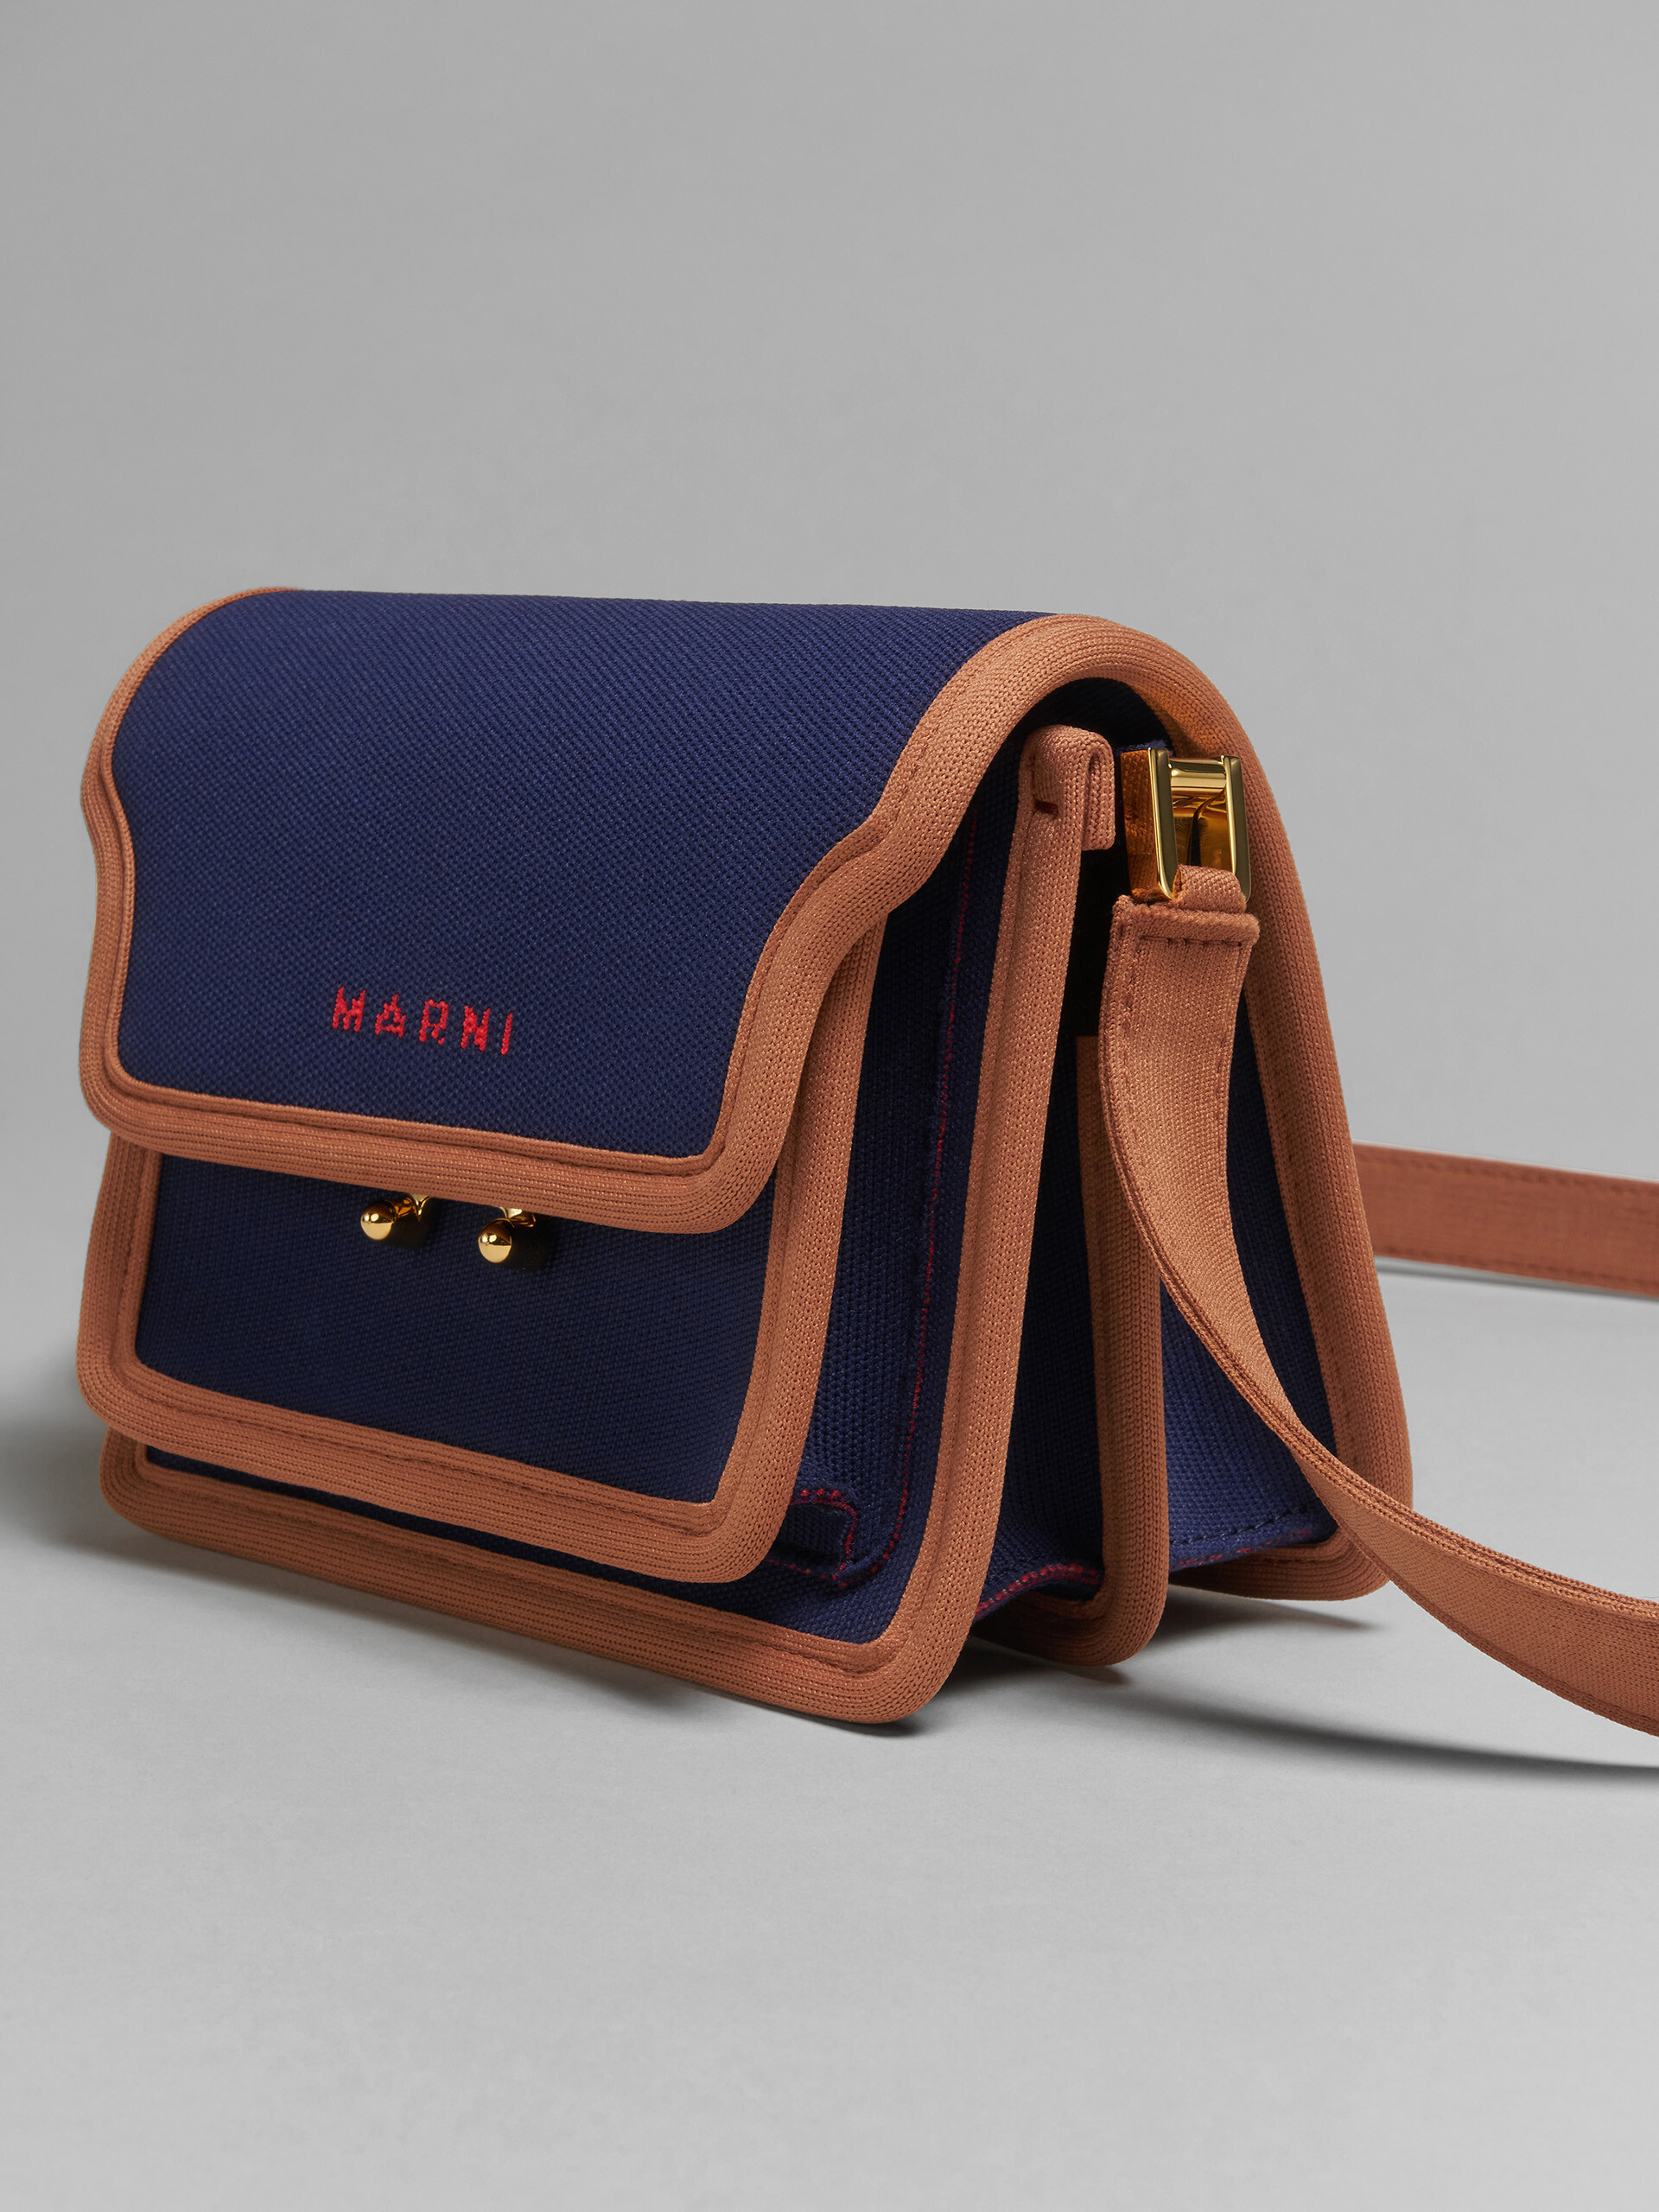 TRUNK SOFT bag mini in jacquard blu e marrone - Borse a spalla - Image 5